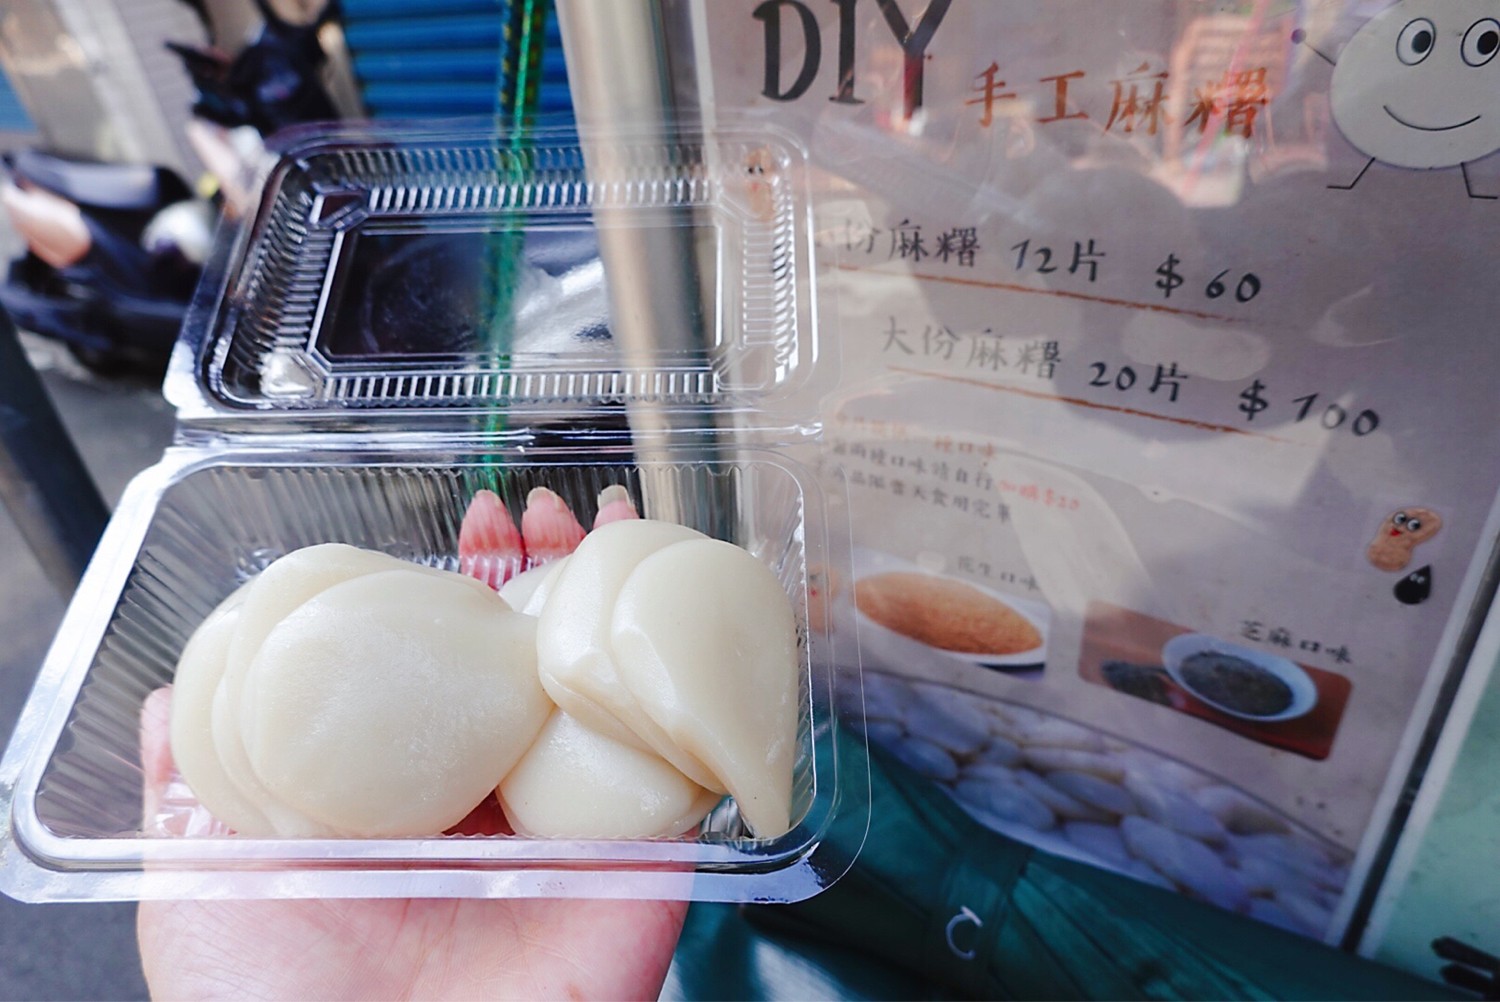 板橋美食,菜燕,麻糬,麻糬DIY